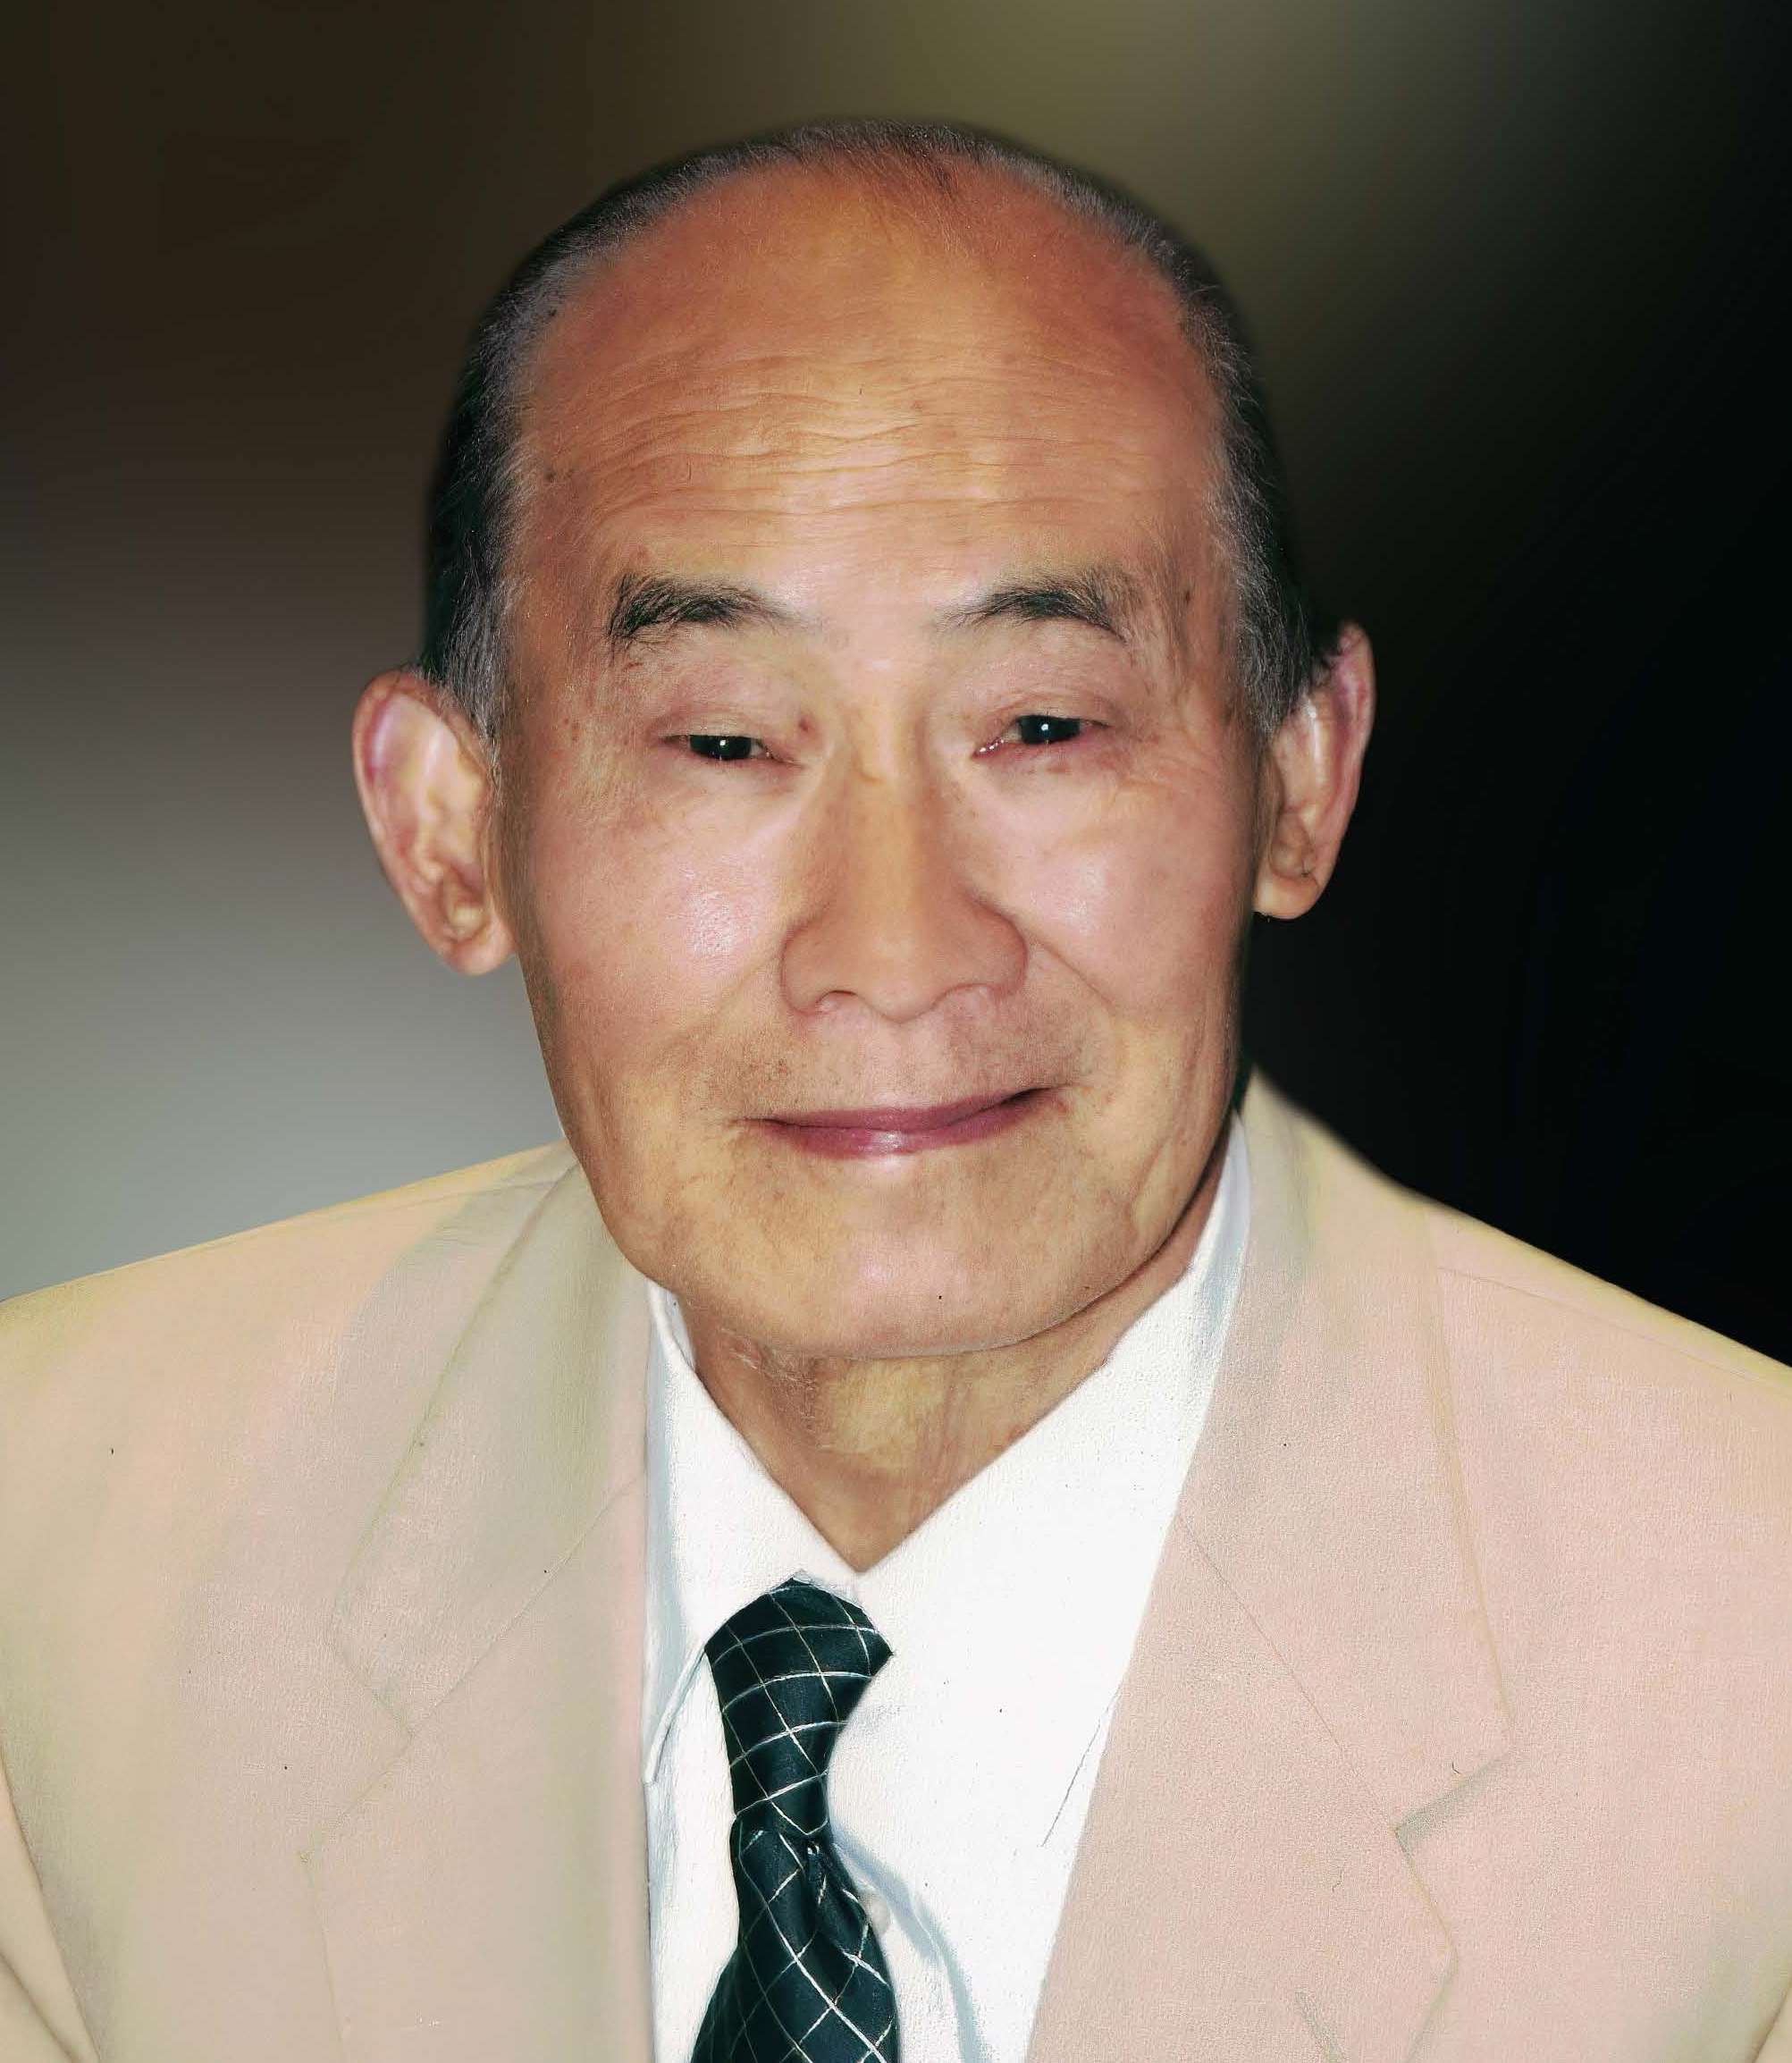 Keng Qiang Yu – Frank J Siebert